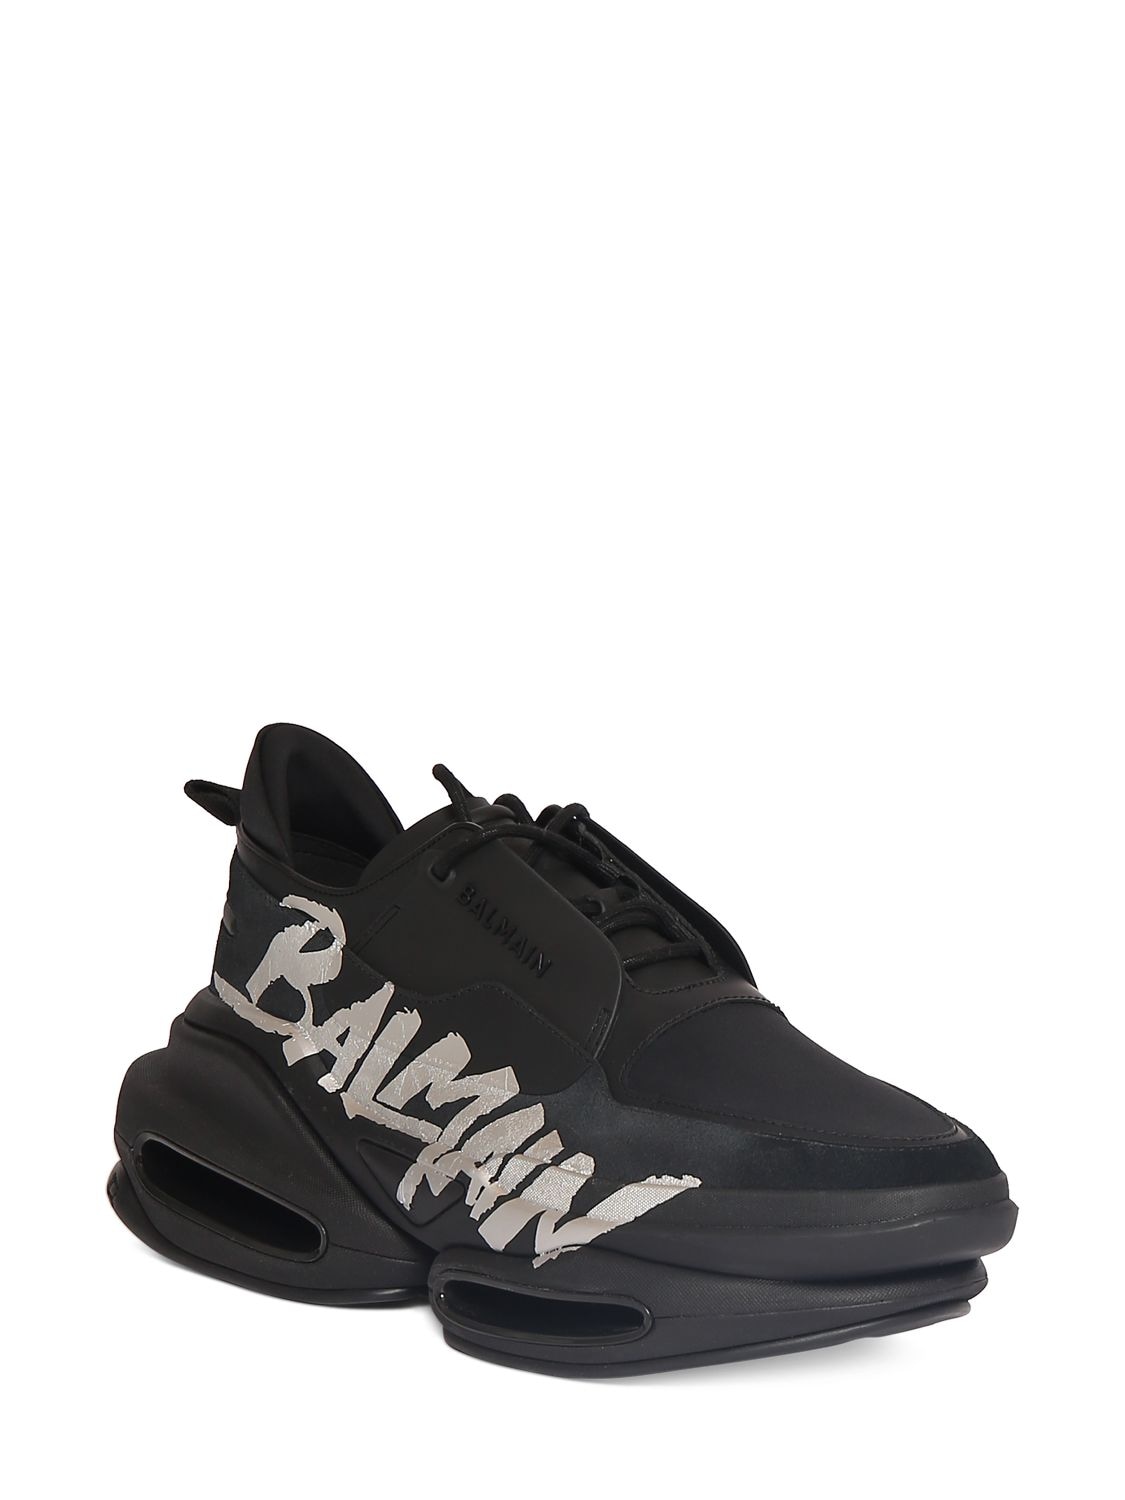 Shop Balmain B Bold Low Rubberized Leather Sneakers In Black,silver